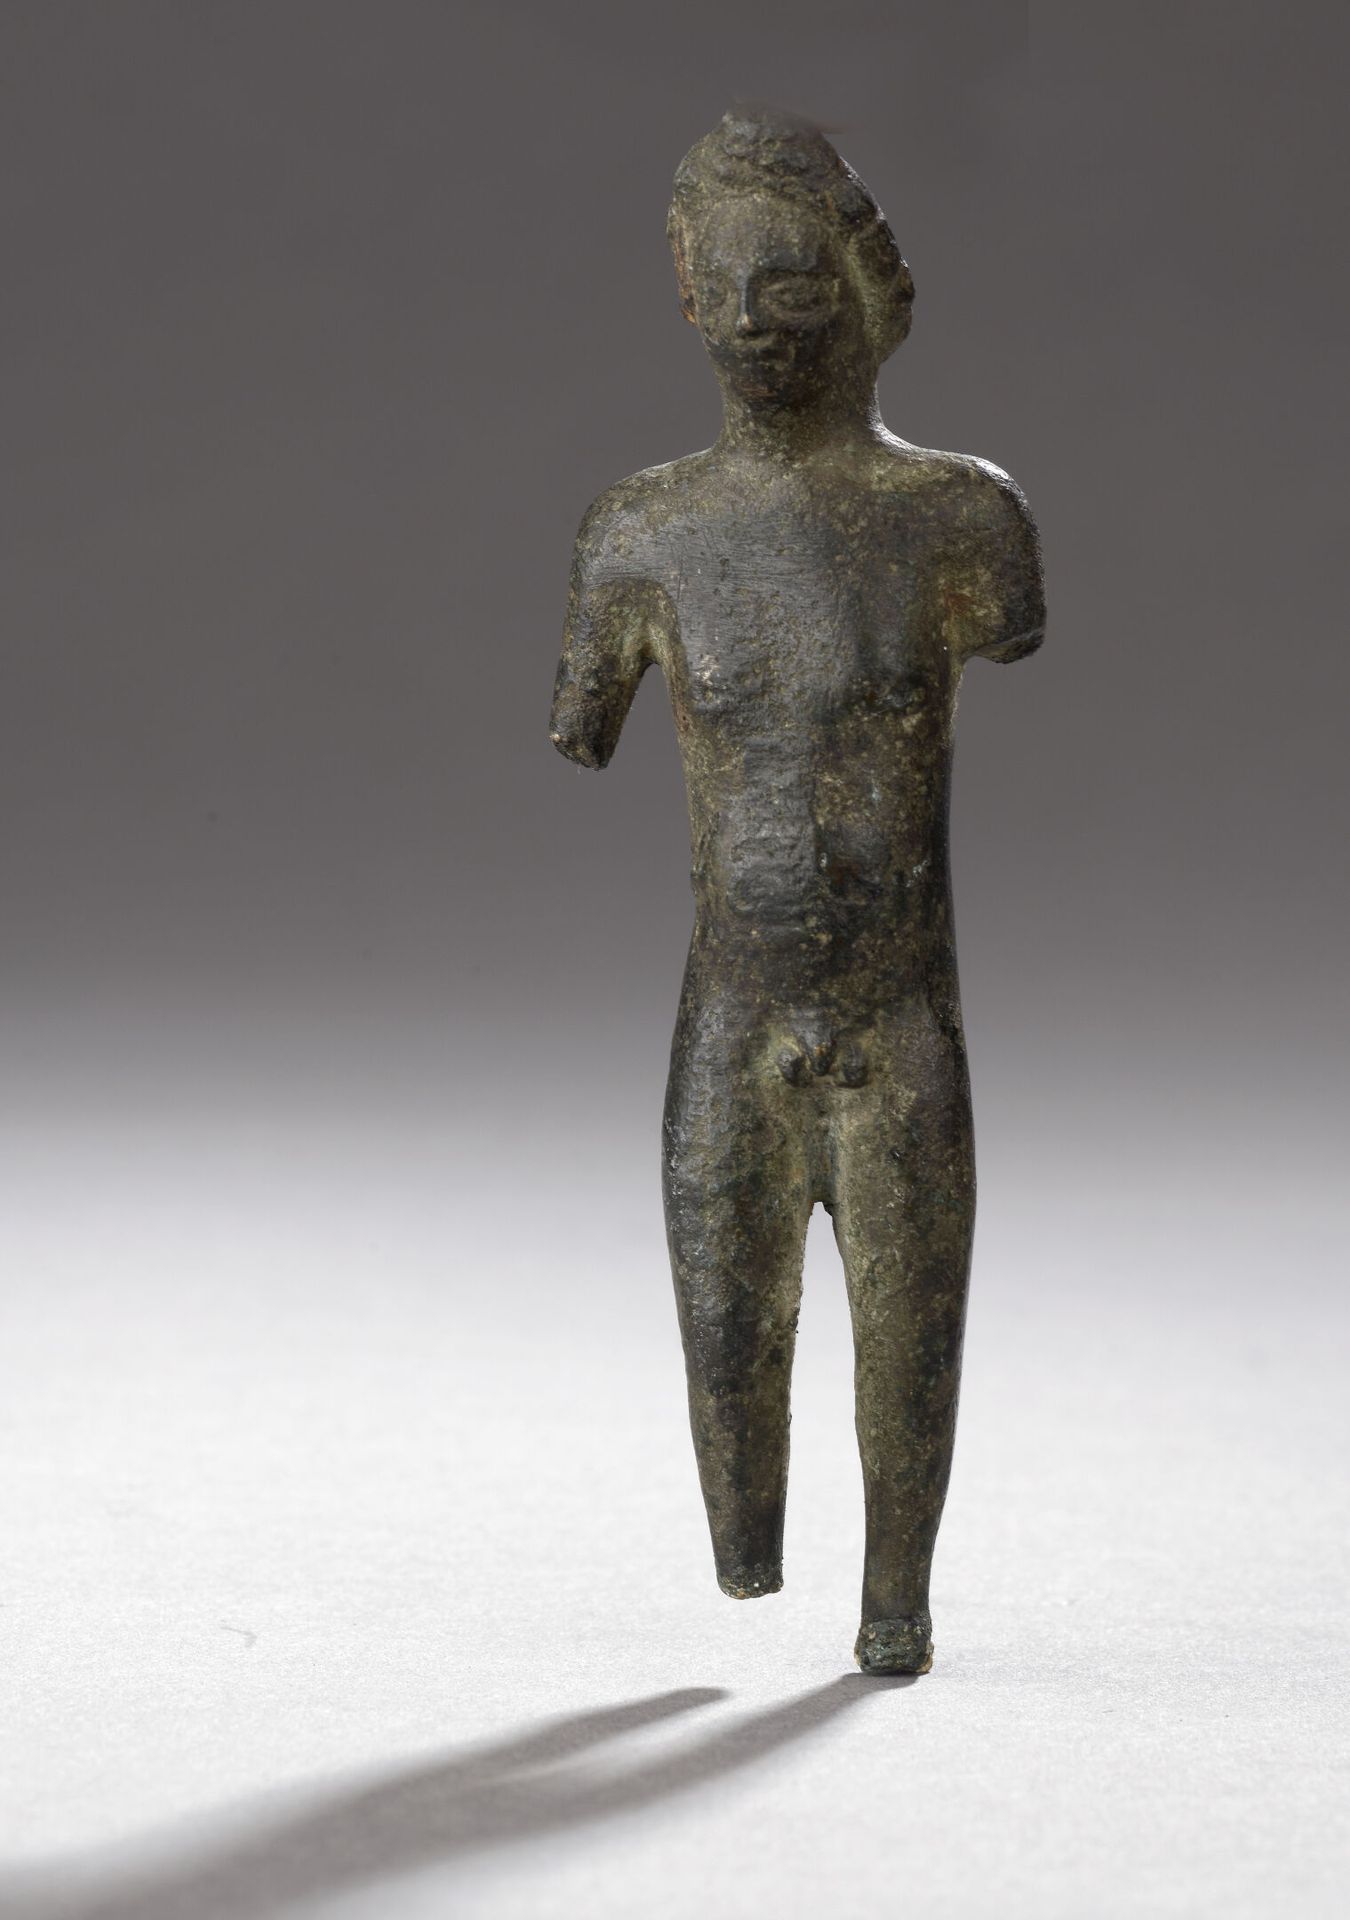 Null 一个站立的无须裸体男子雕像，可能是阿波罗 
青铜质地，有光滑的绿色铜锈 
脚和手臂缺失 
加洛罗马艺术，公元 2-3 世纪 
H.长 10 厘米